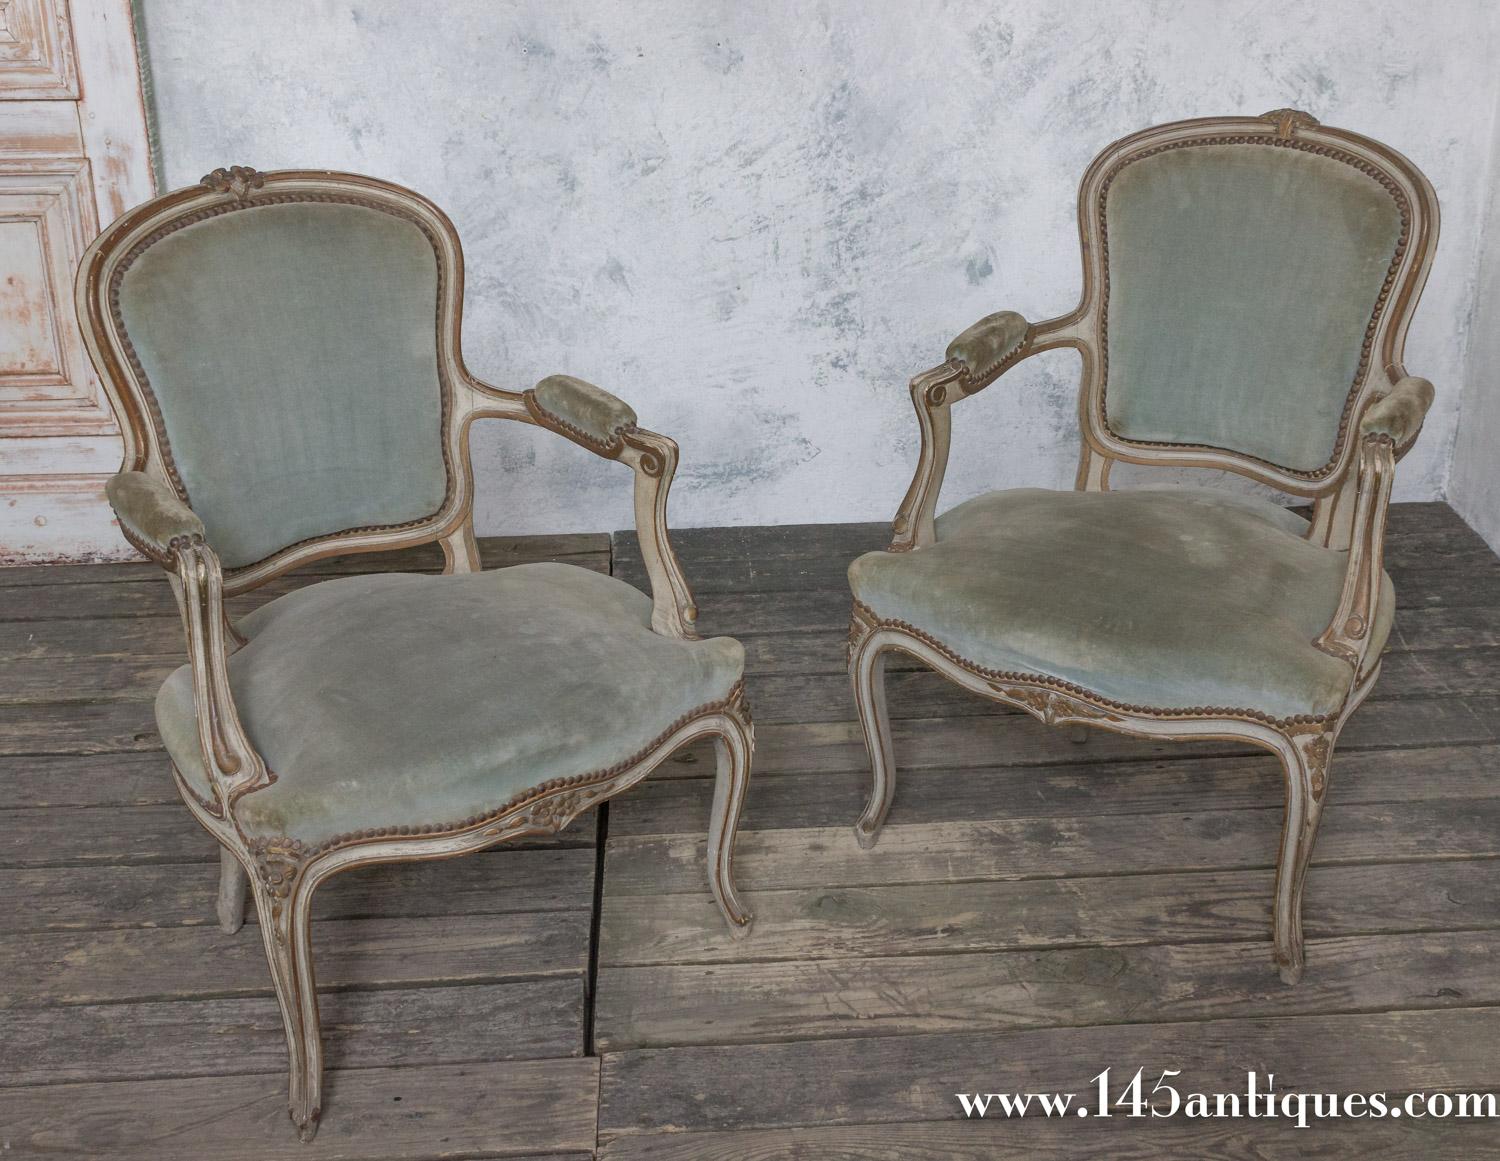 Une exquise paire de fauteuils de style Louis XV en vert sauge. Fabriquée avec soin en France au début du XXe siècle, cette magnifique paire de chaises dégage une grâce sans effort. Finis avec un cadre patiné à la main en gris bleuté crémeux, ils